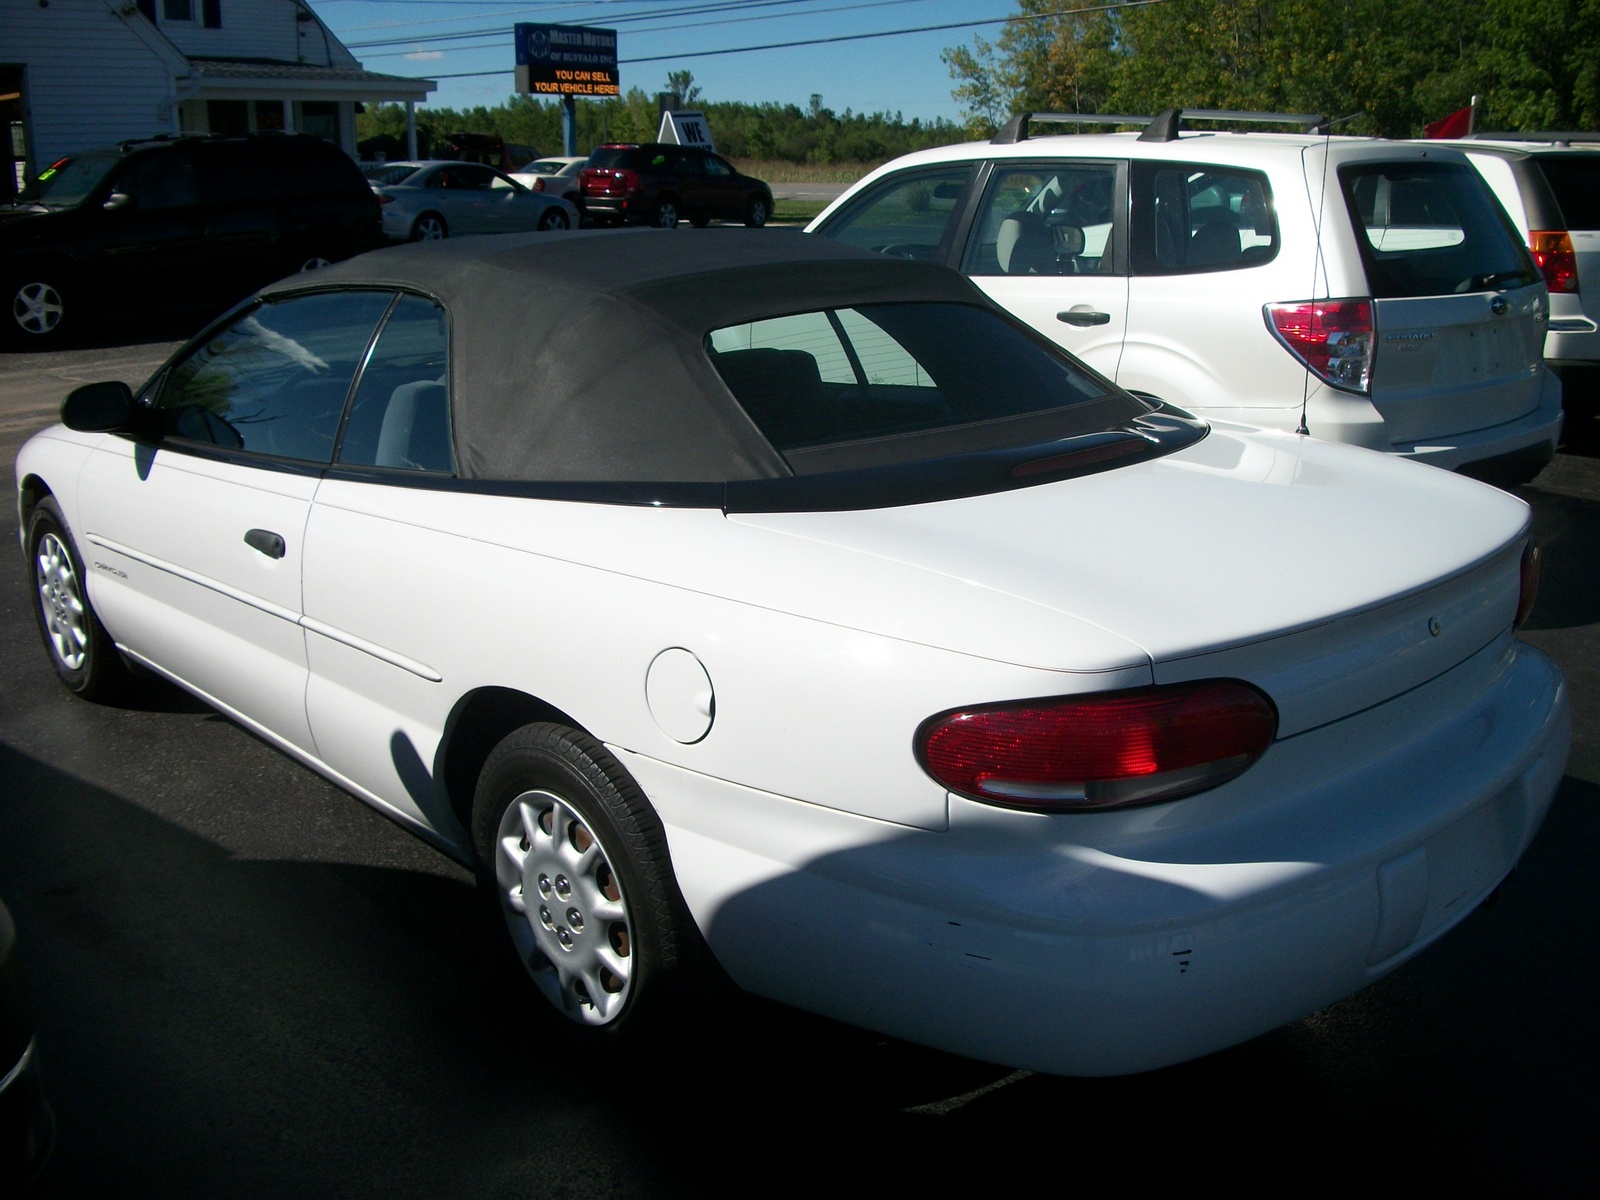 2000 Chrysler sebring customer review #4